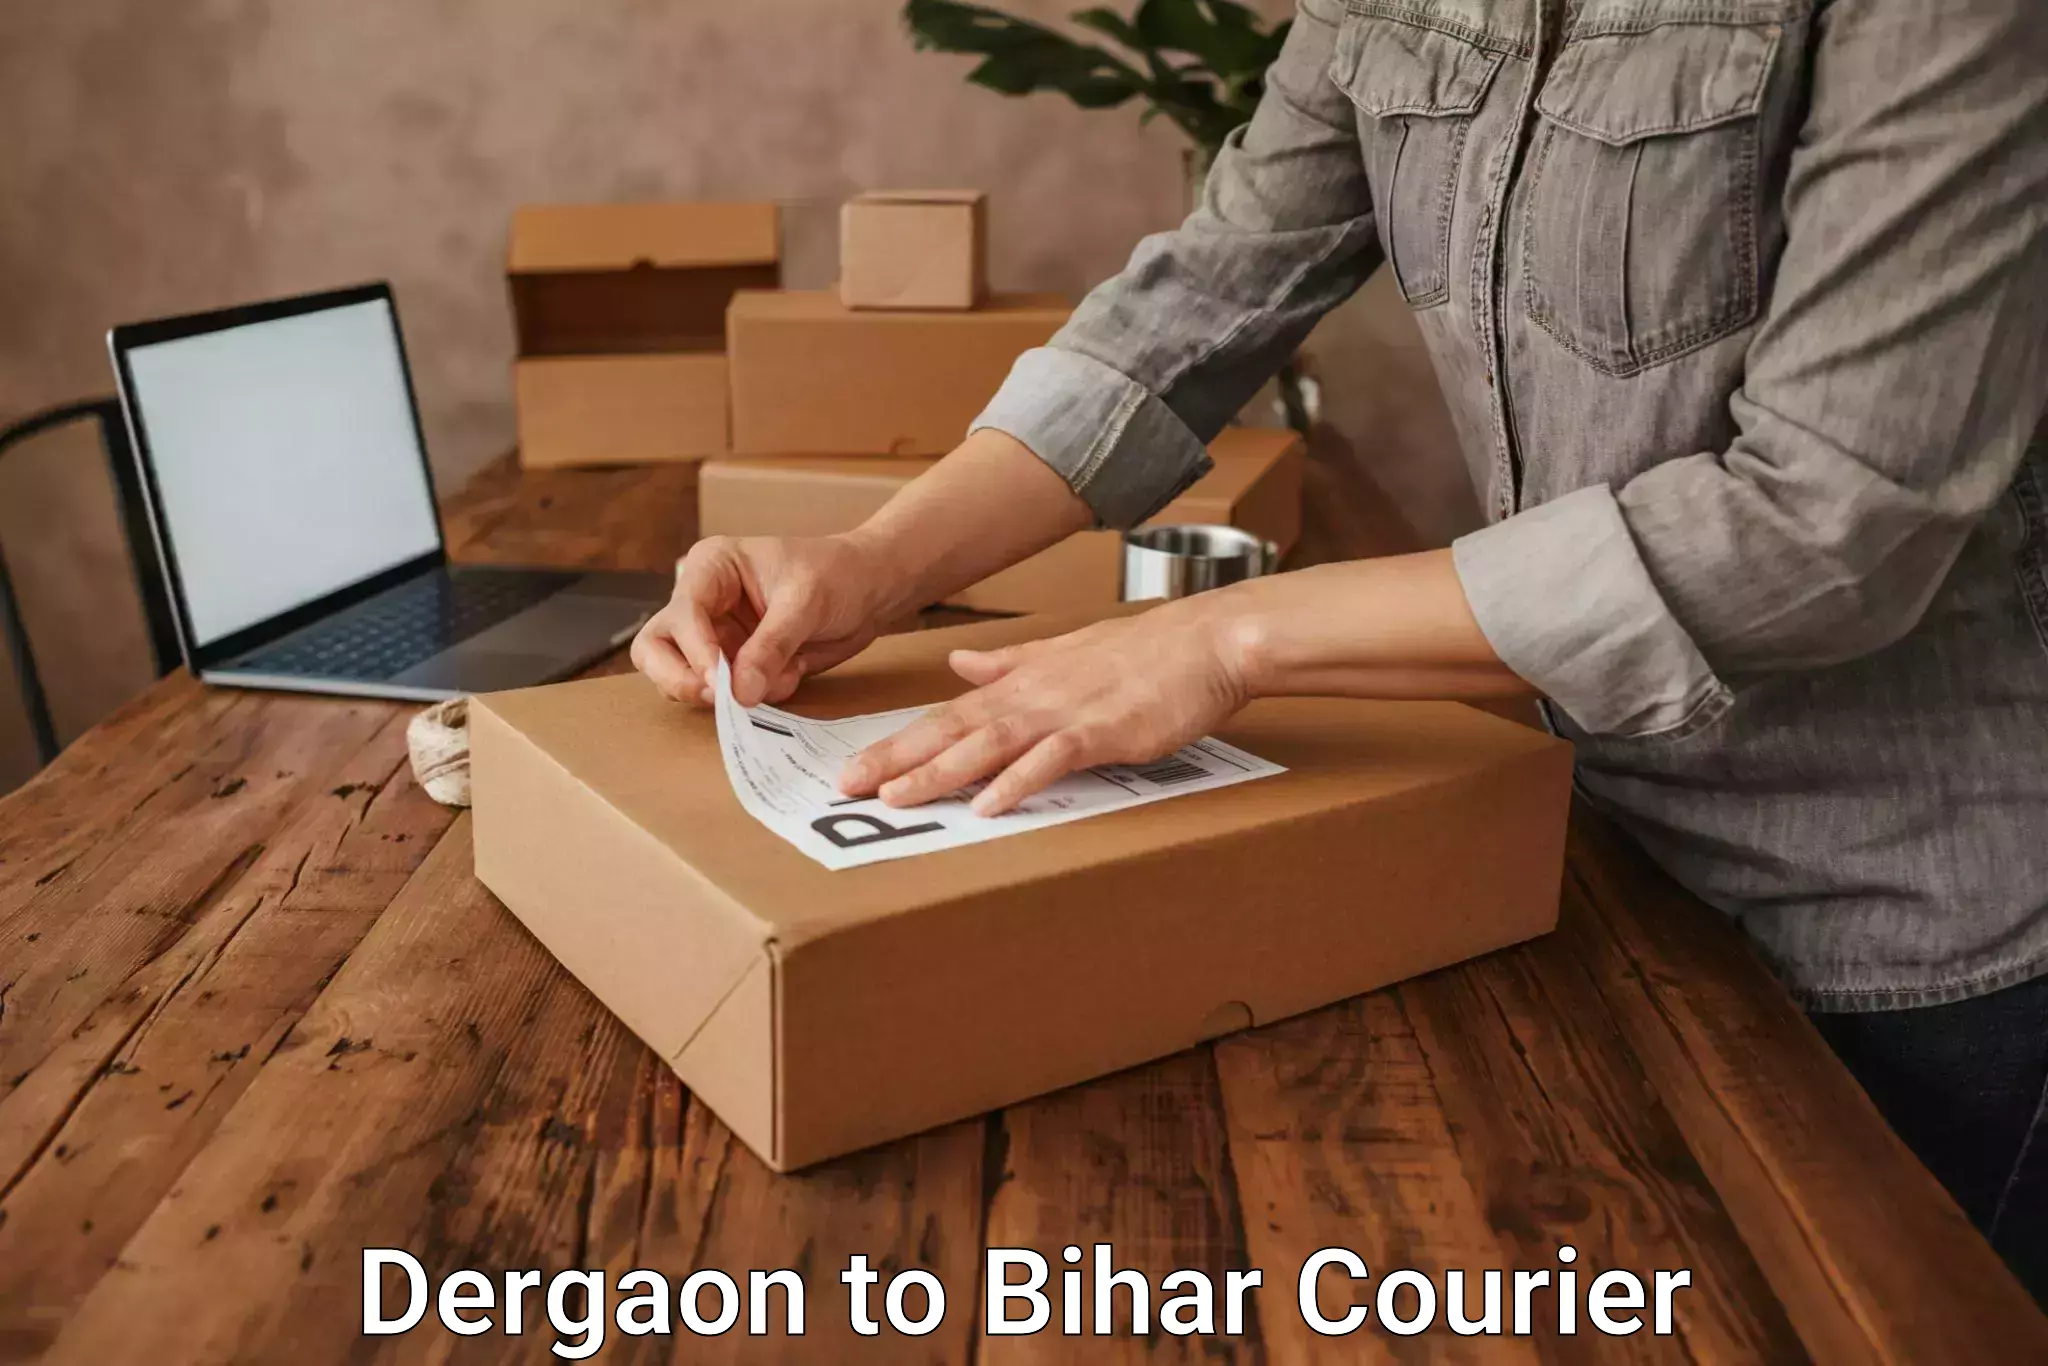 Next-generation courier services Dergaon to Bihar